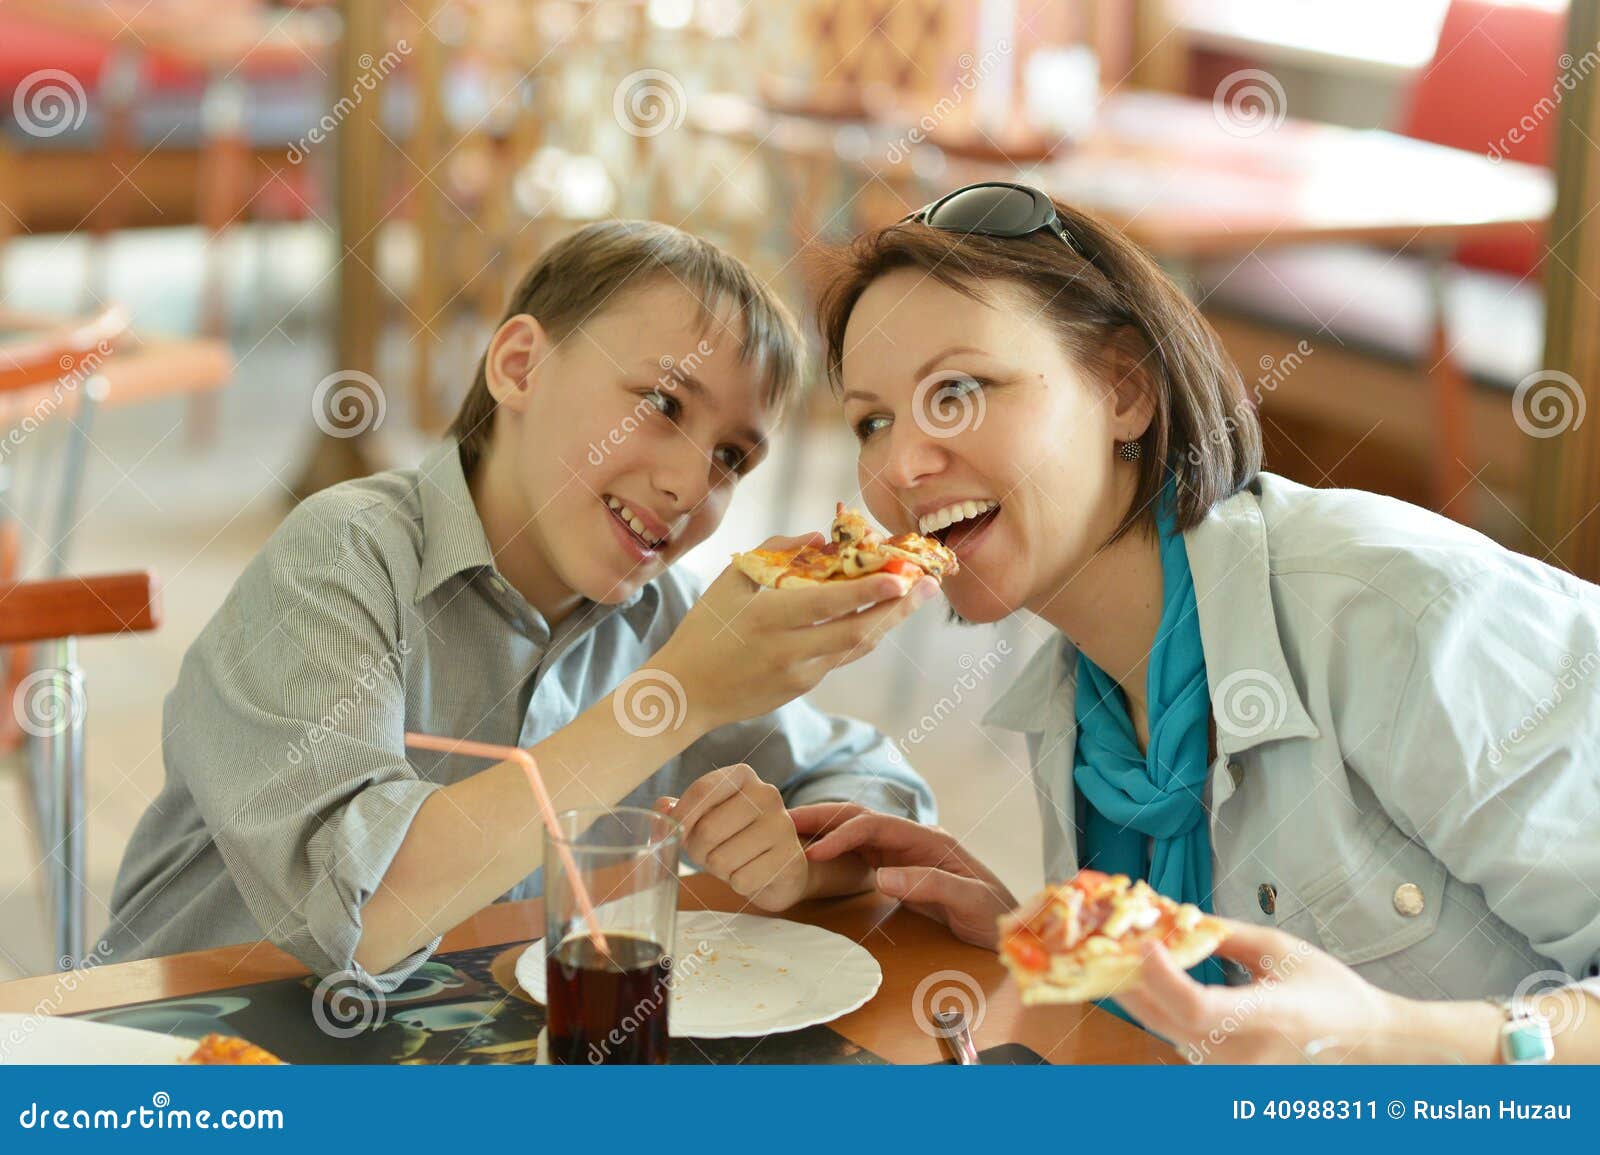 Еду маму друга. Мальчик ест в кафе. Фото семья ест пиццу в кафе. Мама едузуки. Мама привела детей в кафе картинки.